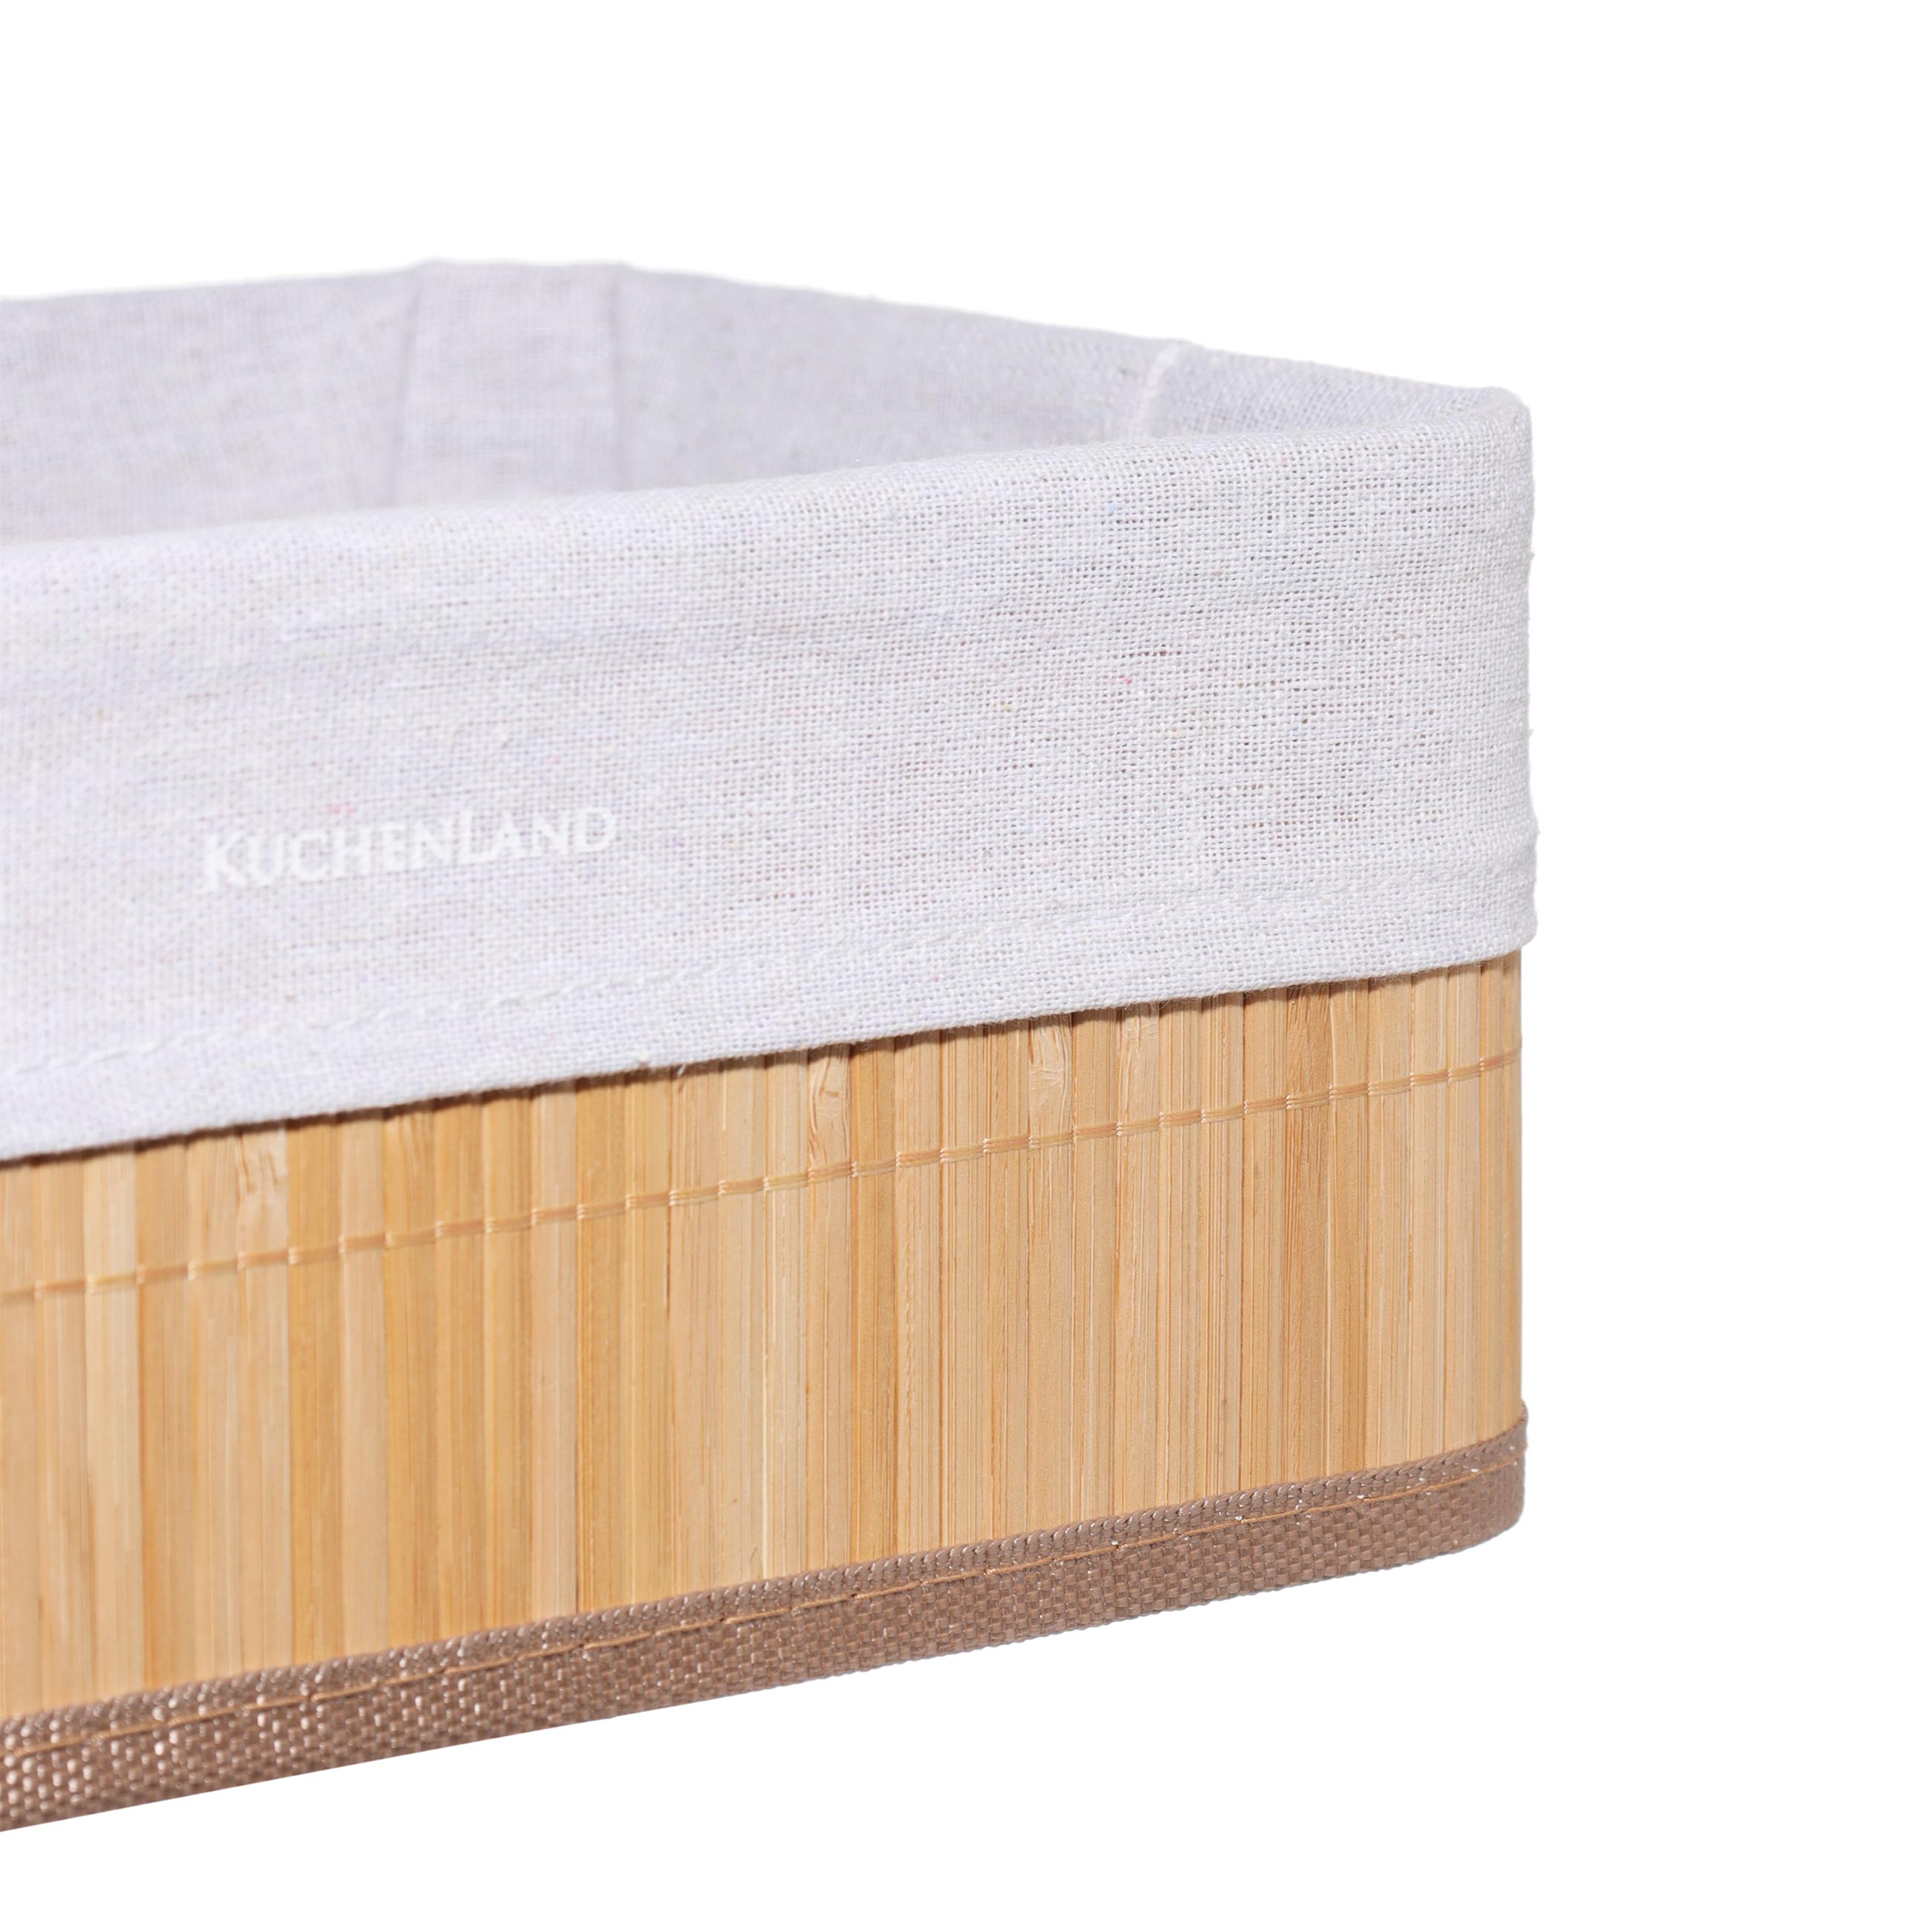 Storage basket, 30x12 cm, bamboo / cotton, rectangular, Beige, Stem изображение № 3